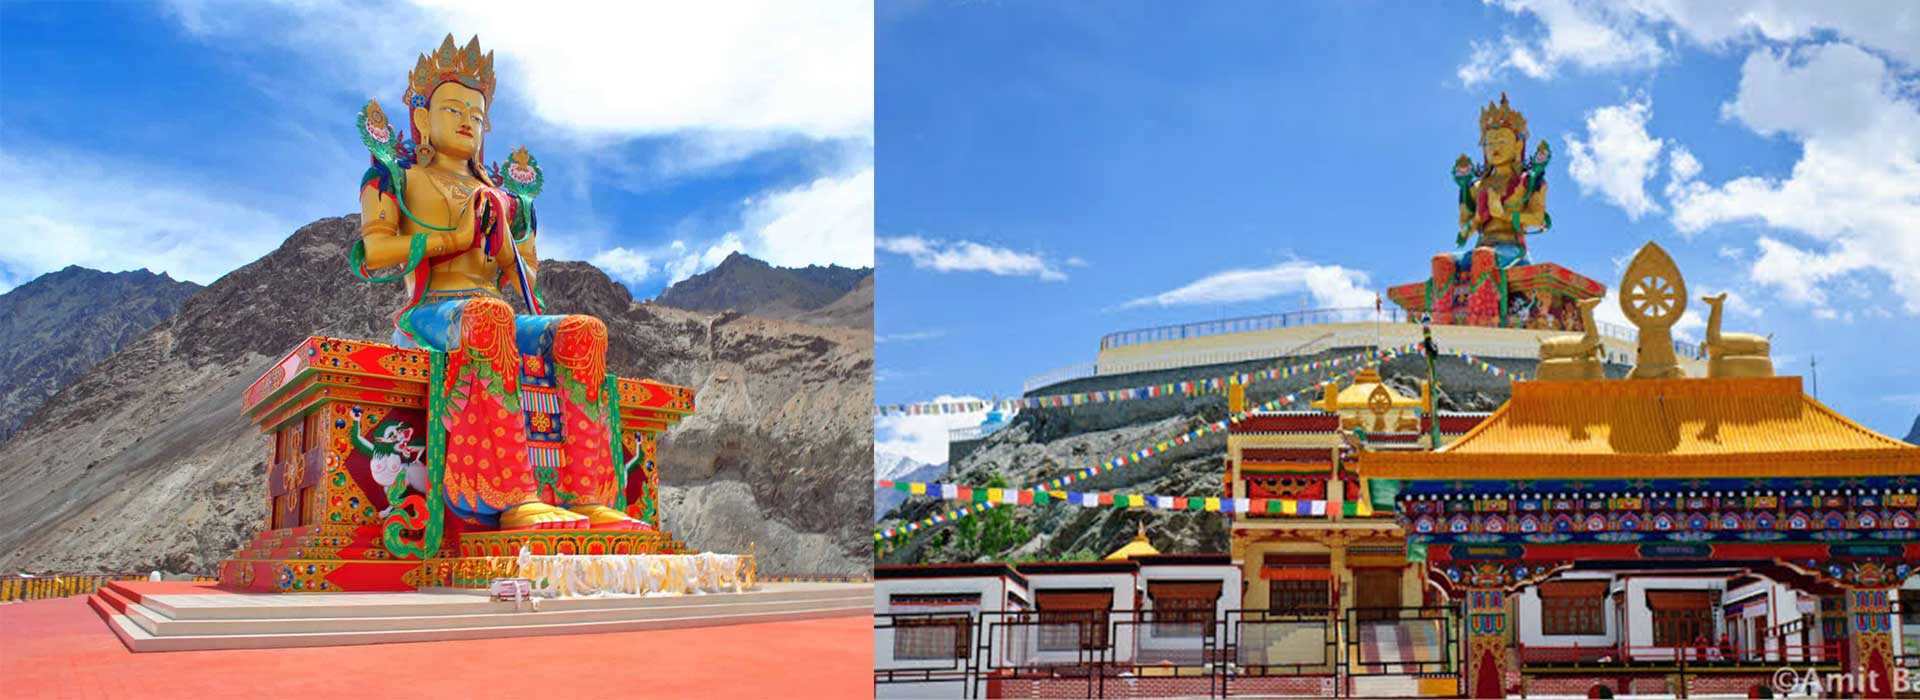 leh-ladakh-introduction-tour-package